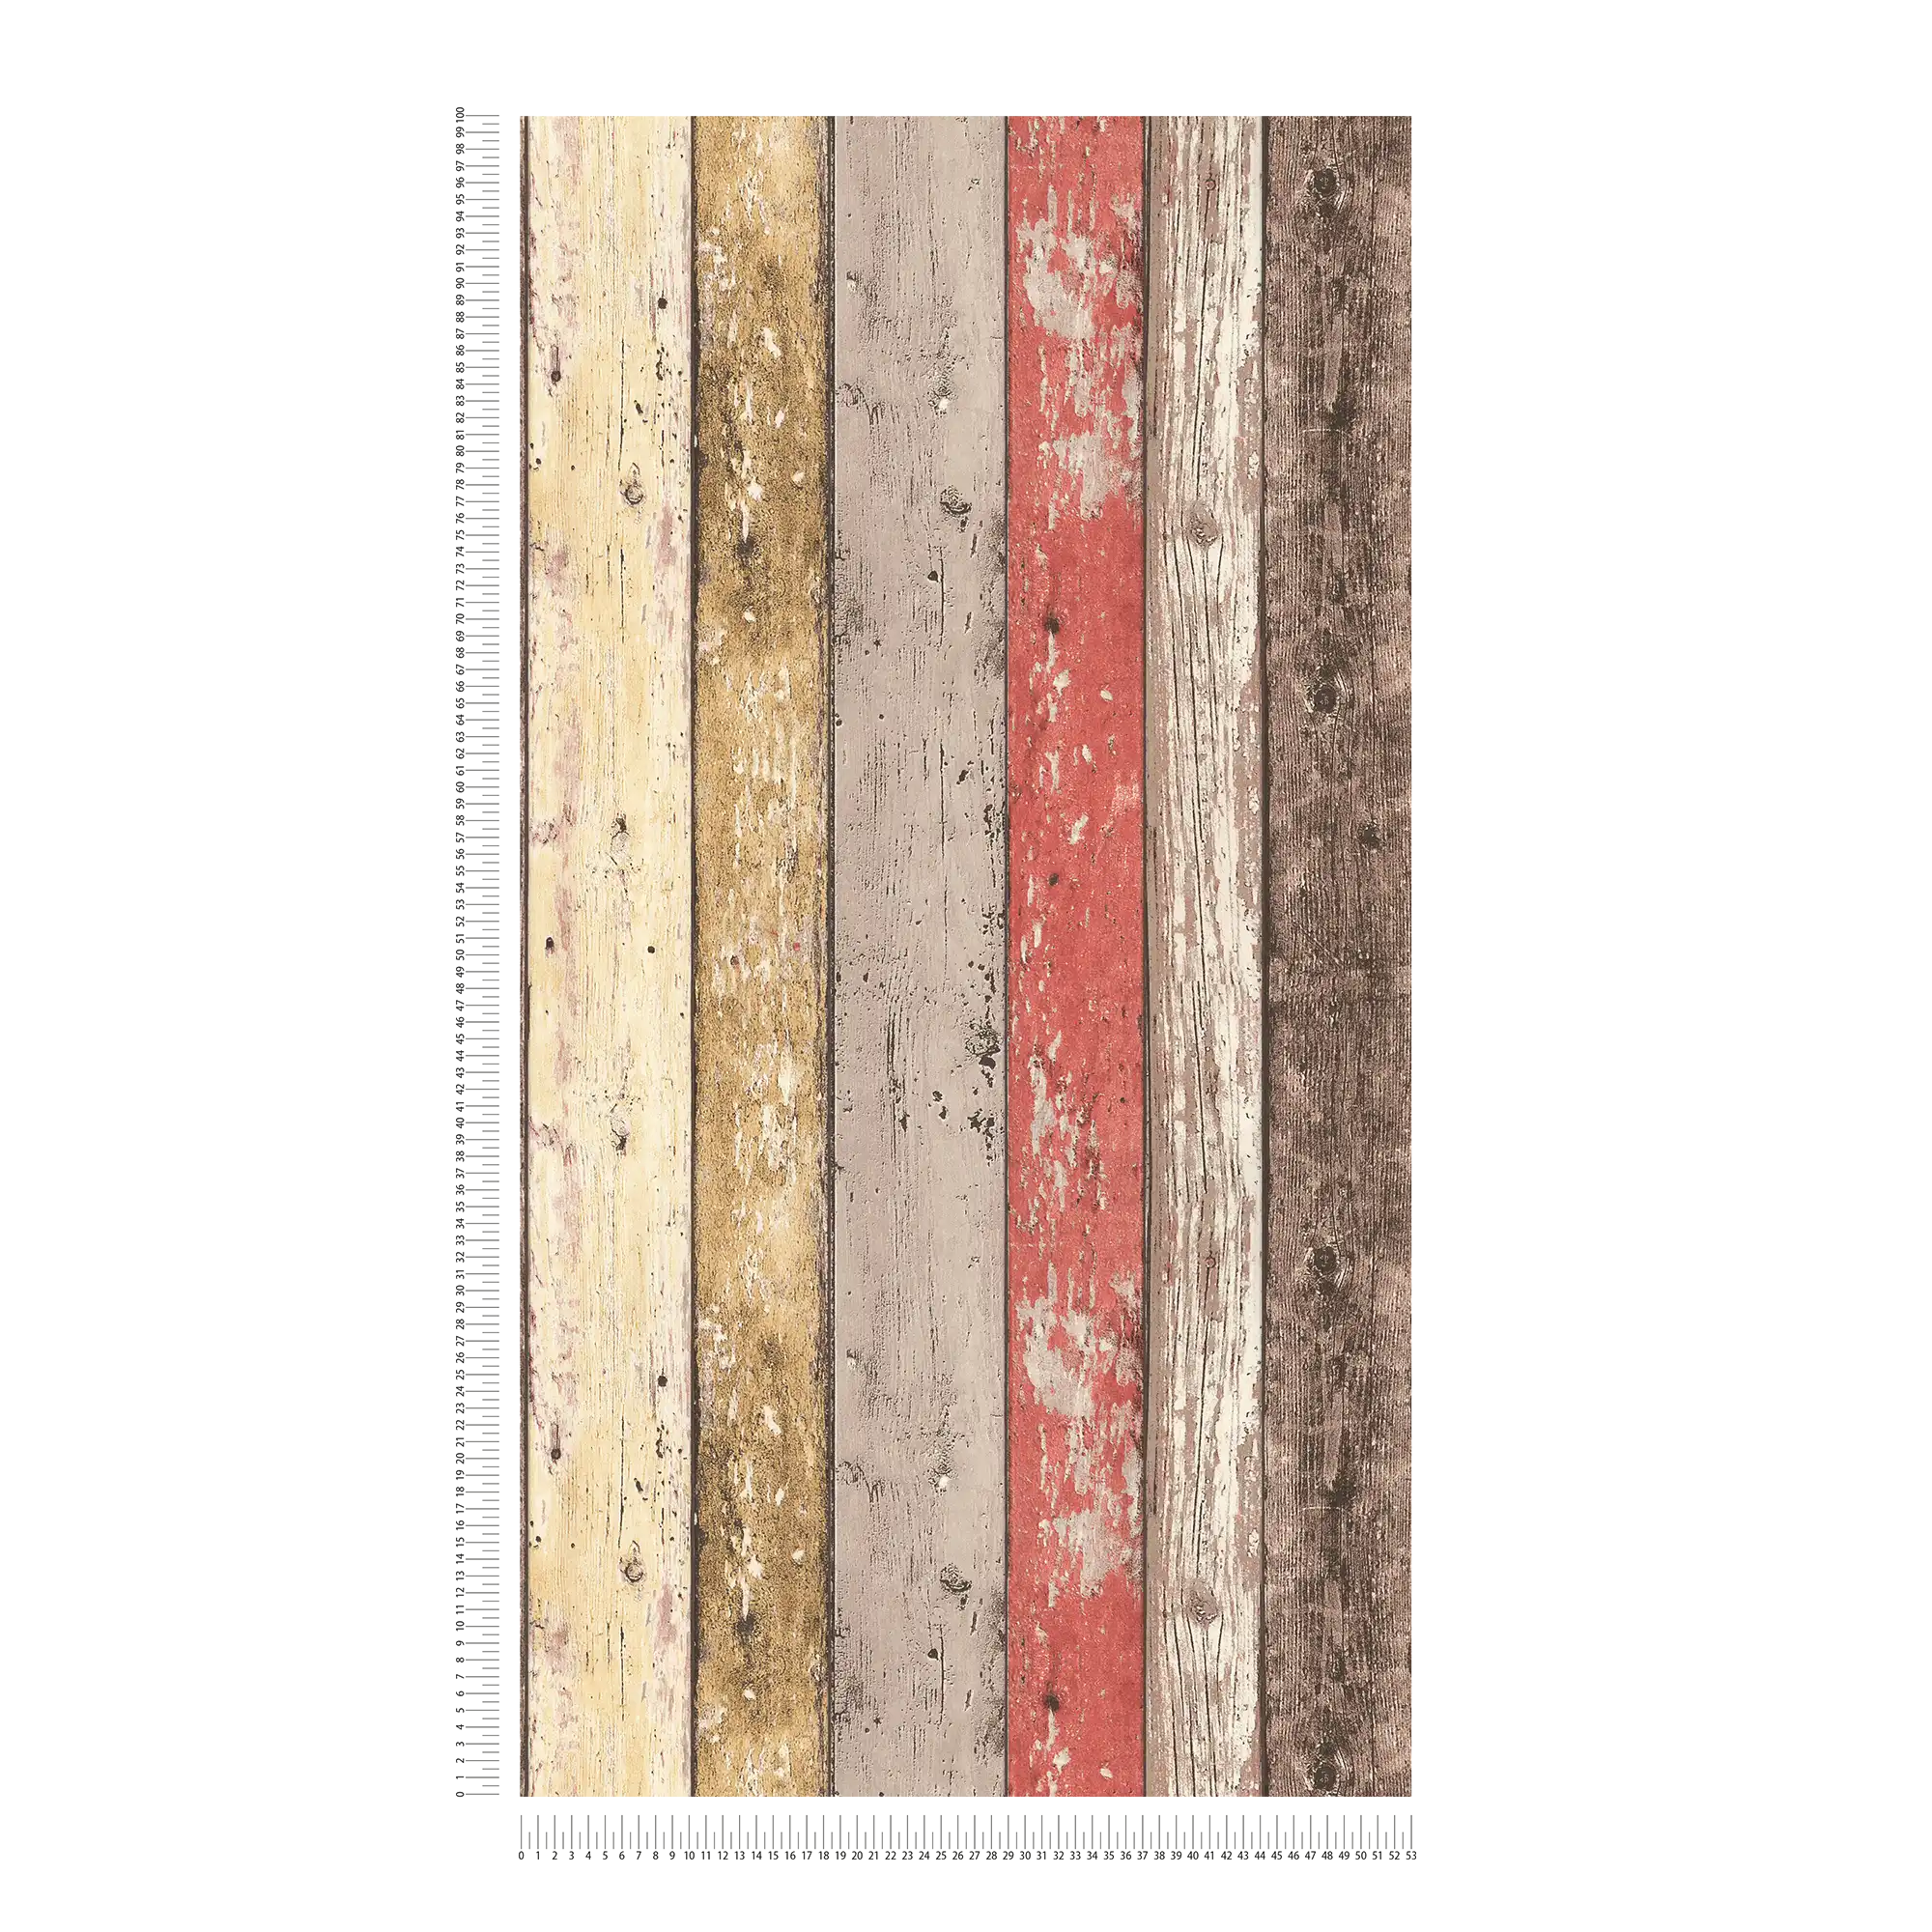             Carta da parati in legno con aspetto usato per lo stile vintage e country - marrone, rosso, beige
        